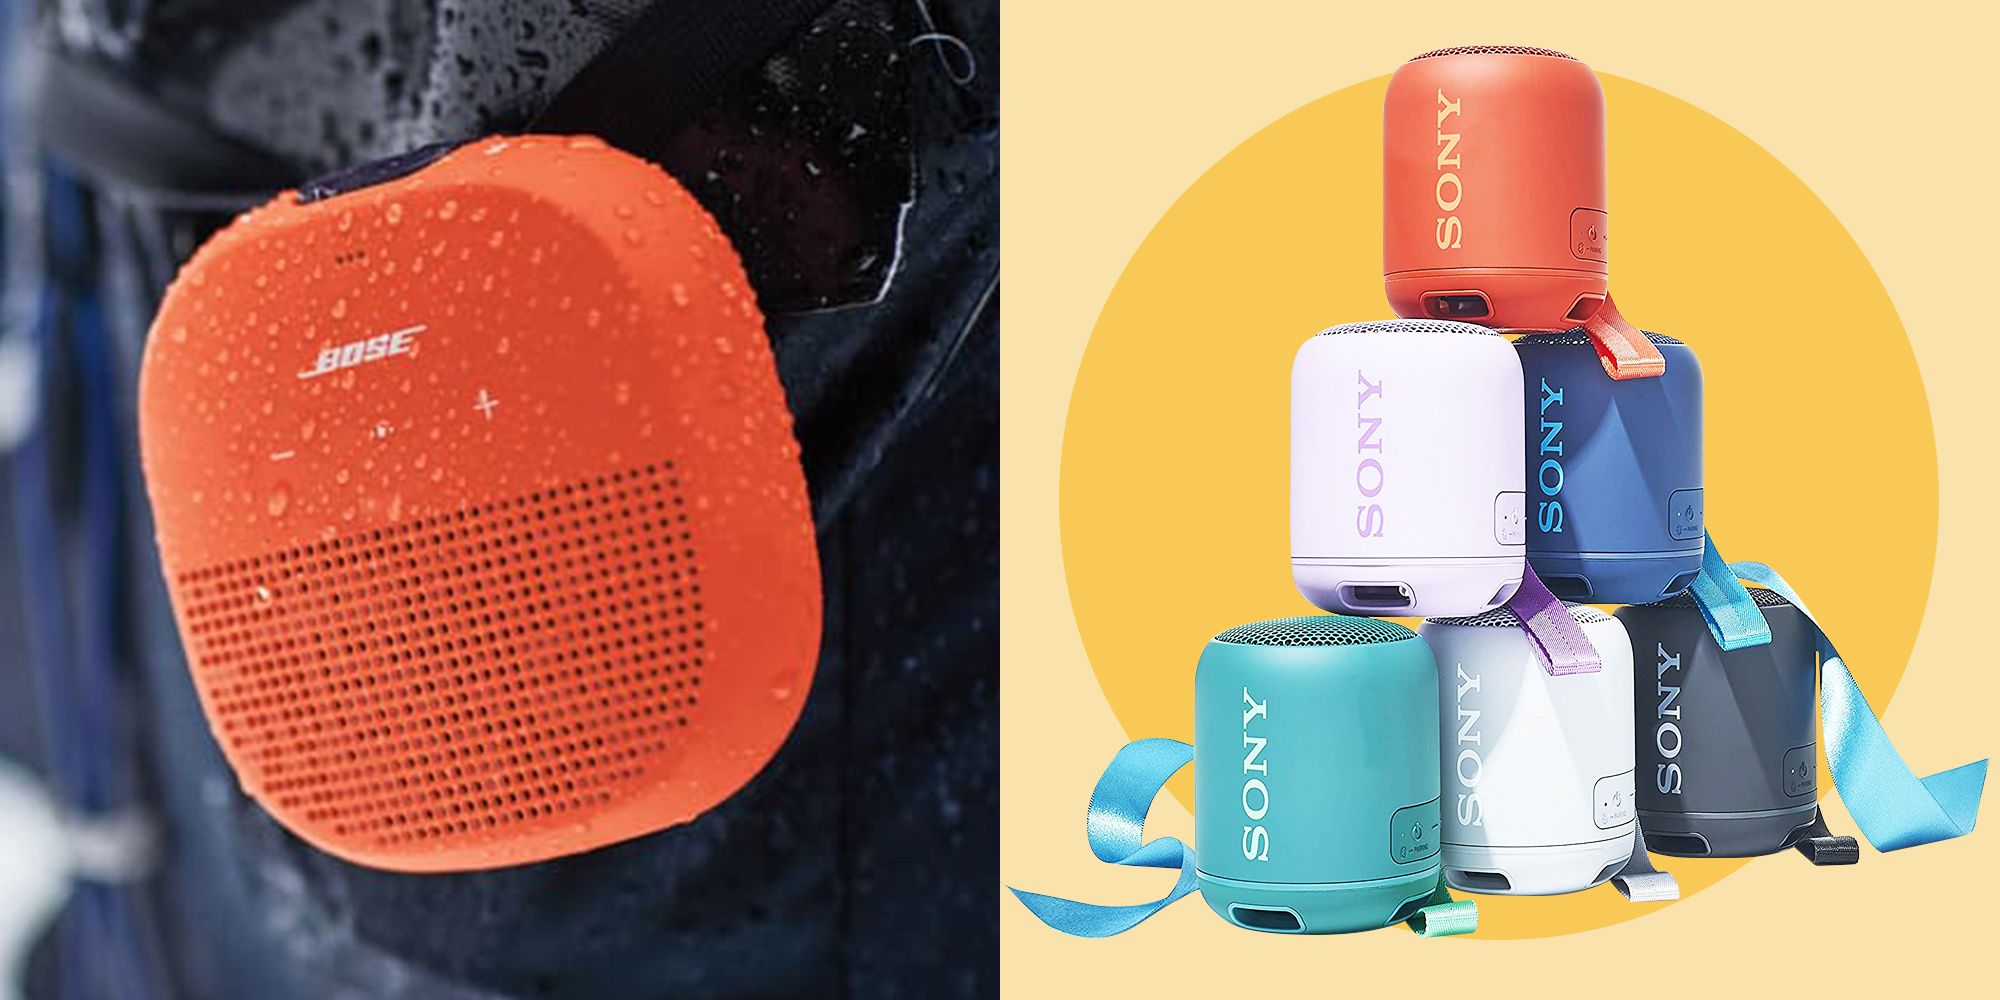 waterproof wireless speaker